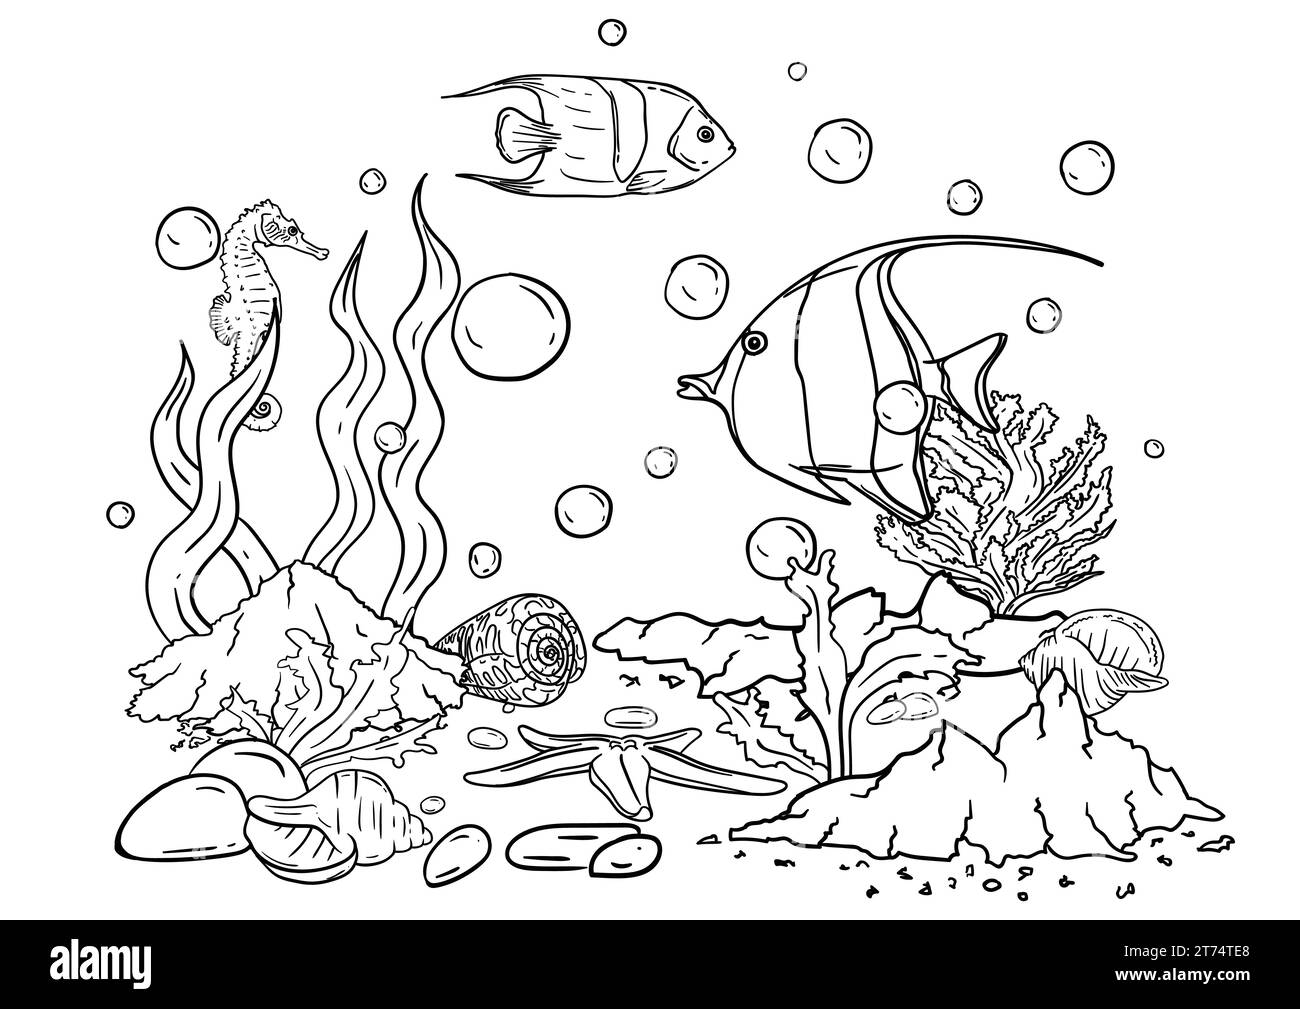 Vektor-Illustration eines Malbuchs der Unterwasserwelt mit schönen Fischen, Muscheln, Algen im Meer Stock Vektor